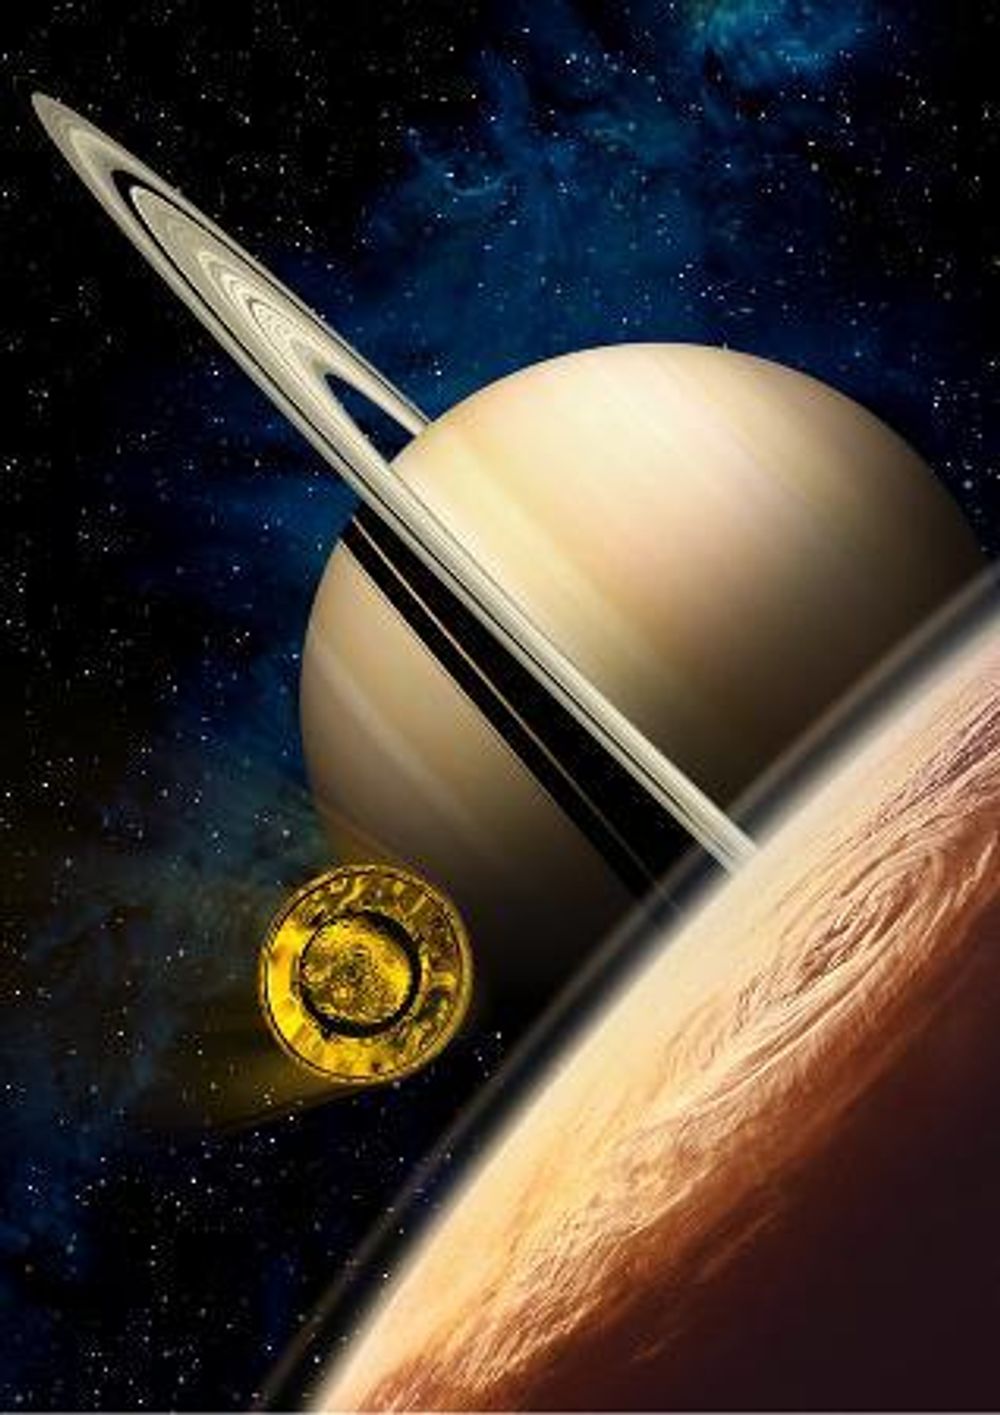 Huygens på vei mot Titan 	
Bildetekst	Illustrasjon av Huygens-sonden på vei ned mot Titans atmosfære i en fart av 22 000 kilometer i timen. Ill: ESA/D. Ducros